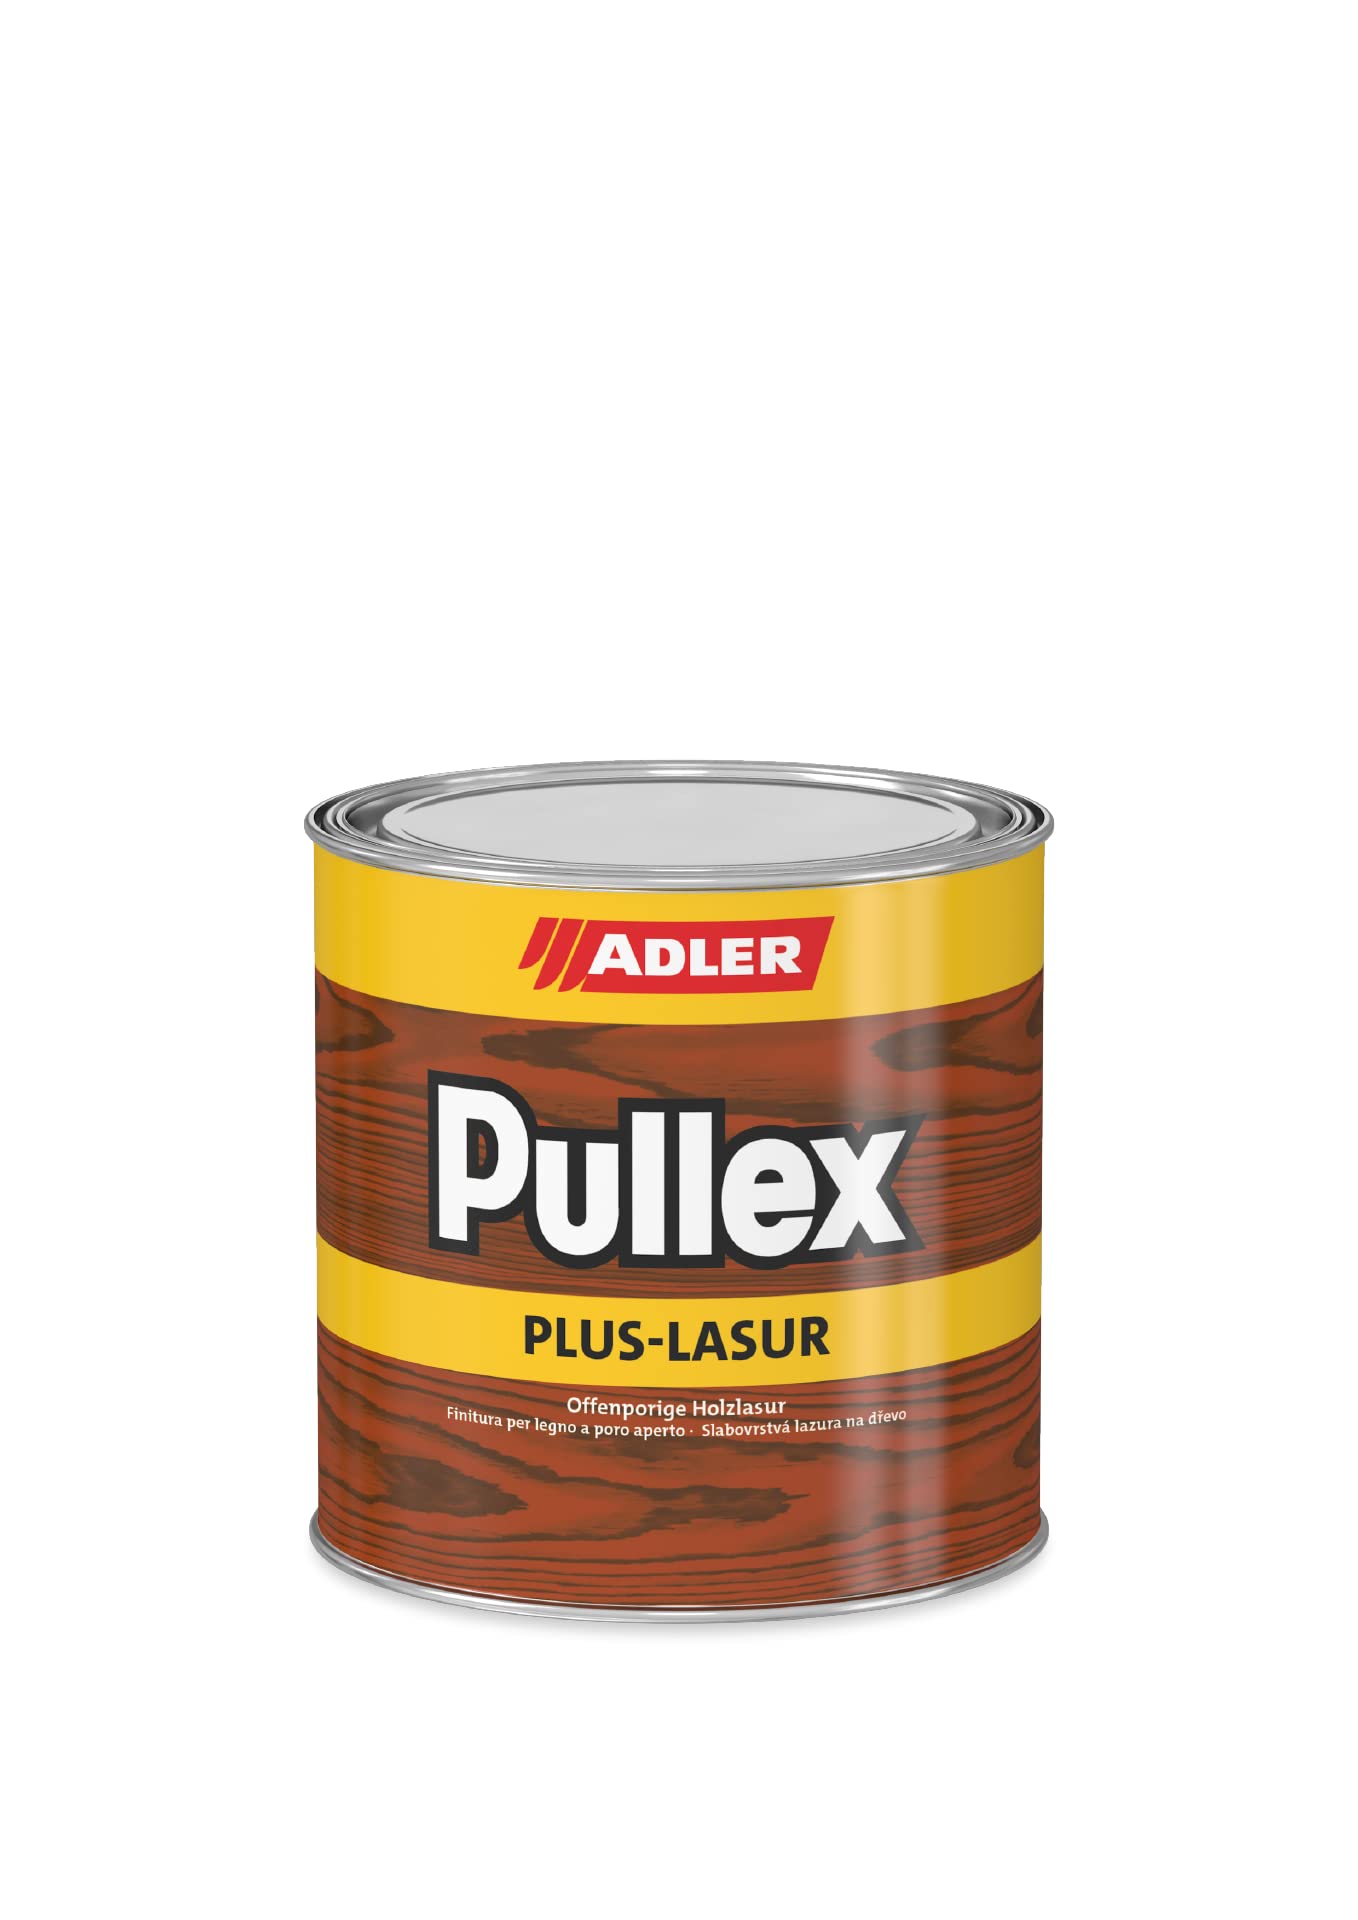 ADLER Pullex Plus-Lasur - Holzlasur Außen Farblos - Universell einsetzbare & aromatenfreie Holzschutzlasur als perfekter UV- & Wetterschutz - 5 l Kastanie/Braun